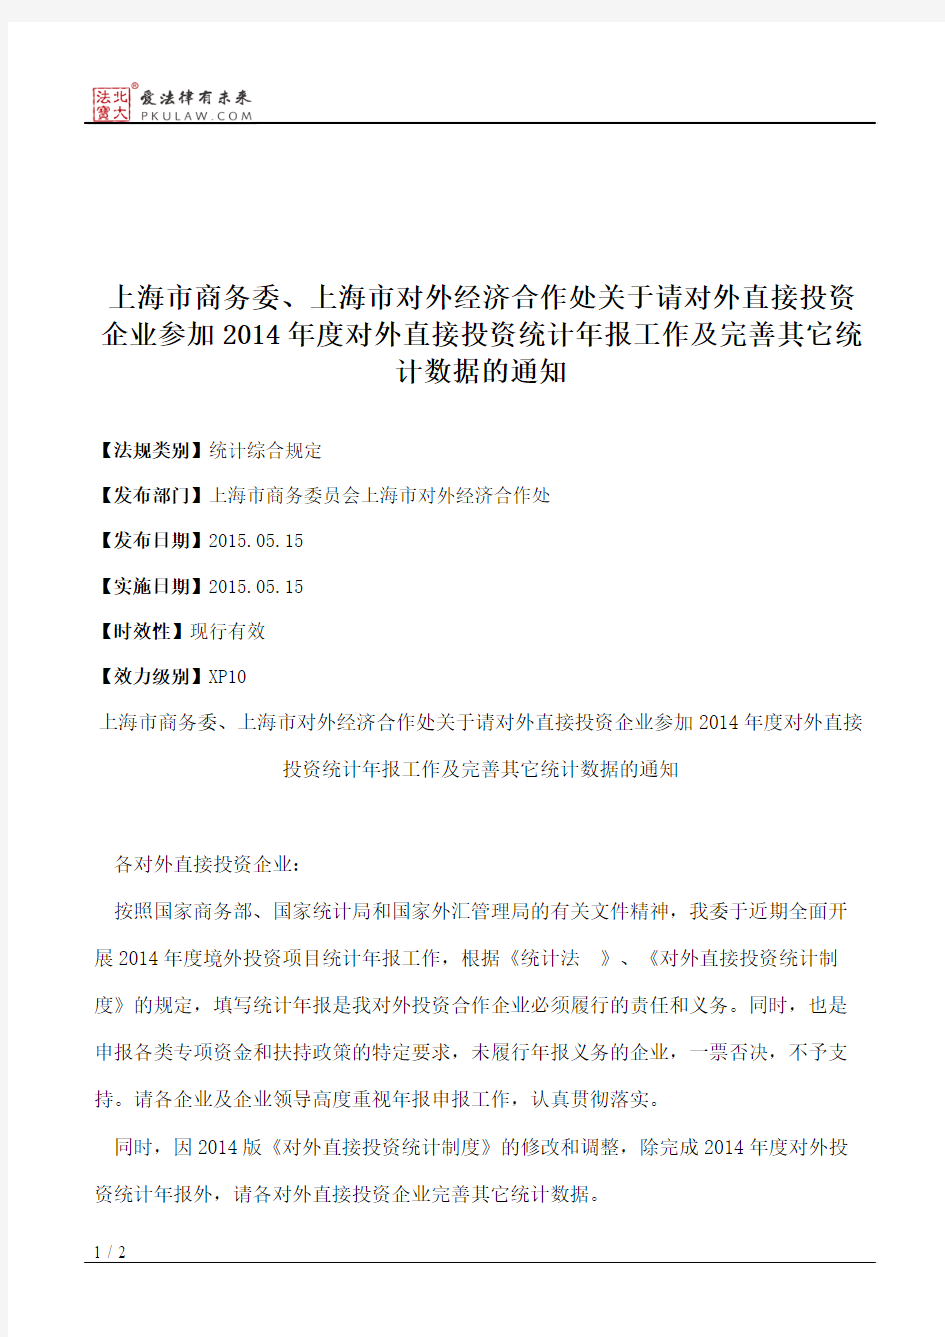 上海市商务委、上海市对外经济合作处关于请对外直接投资企业参加